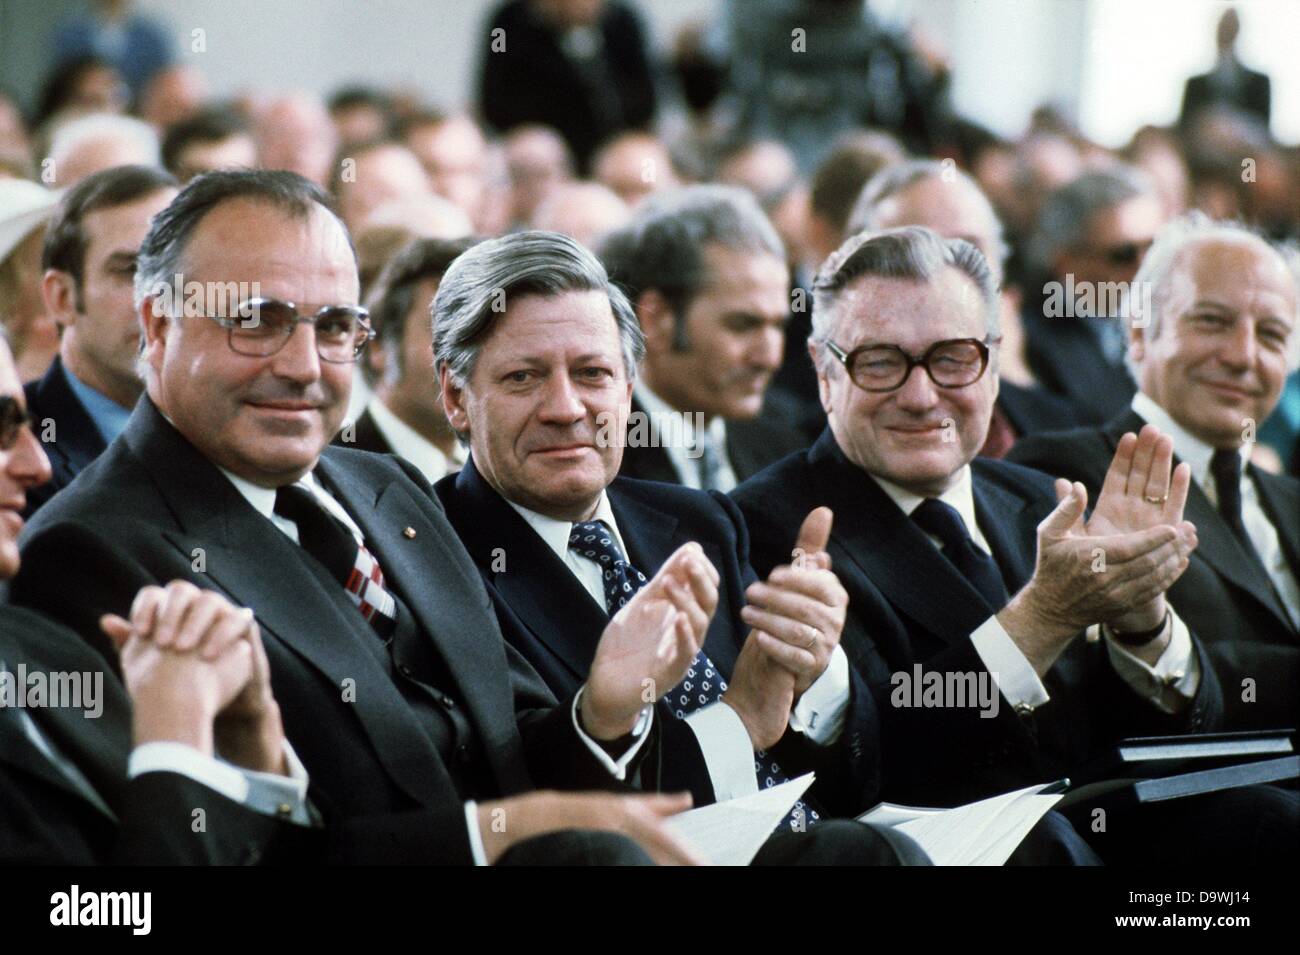 Republikanische Gouverneur des US-Bundesstaates New York, Nelson A. Rockefeller (2. von rechts), in einem festlichen Akt anlässlich des 200. Jahrestages der USA in Frankfurt am Main am 15. Mai 1976 beteiligt. Neben ihm der CDU Vorsitzende Helmut Kohl (l), Bundeskanzlers Helmut Schmidt (2.v.l.) und Walter Scheel (r). Stockfoto